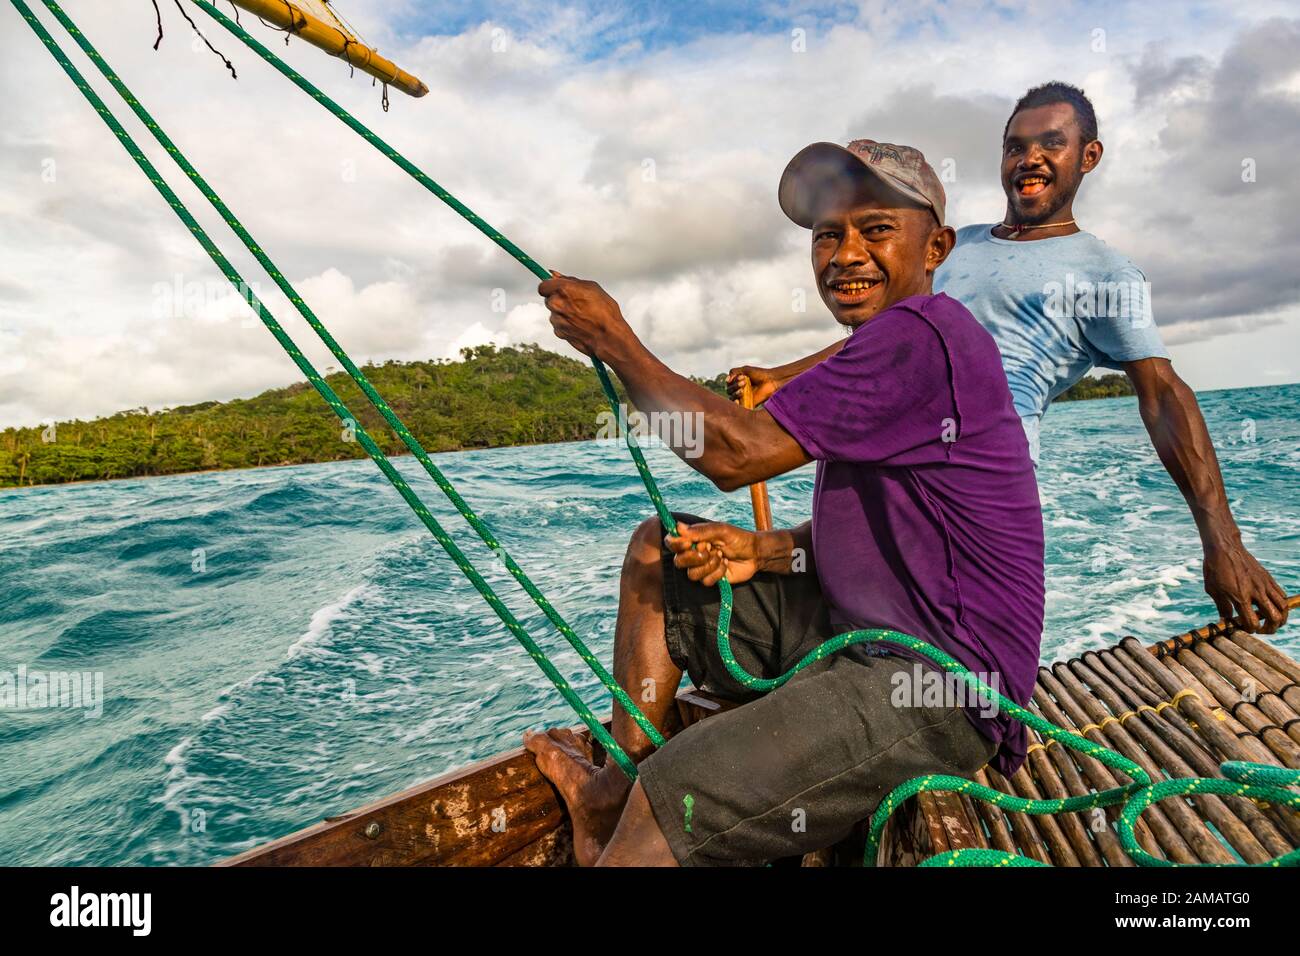 Polynesischer Stil segelt auf einem Proa (Multi-Hull Outrigger Segelboot) auf den Deboyne-Inseln, Papua-Neuguinea. Die Besatzung besteht aus mindestens drei Personen. Man bestimmt den Angriffswinkel des Segels auf der Rückseite. Ein anderes Crew-Mitglied steuert durch Gewichtsverlagerung. Ein loses Paddel kann verwendet werden, um leicht zu lenken. Stockfoto